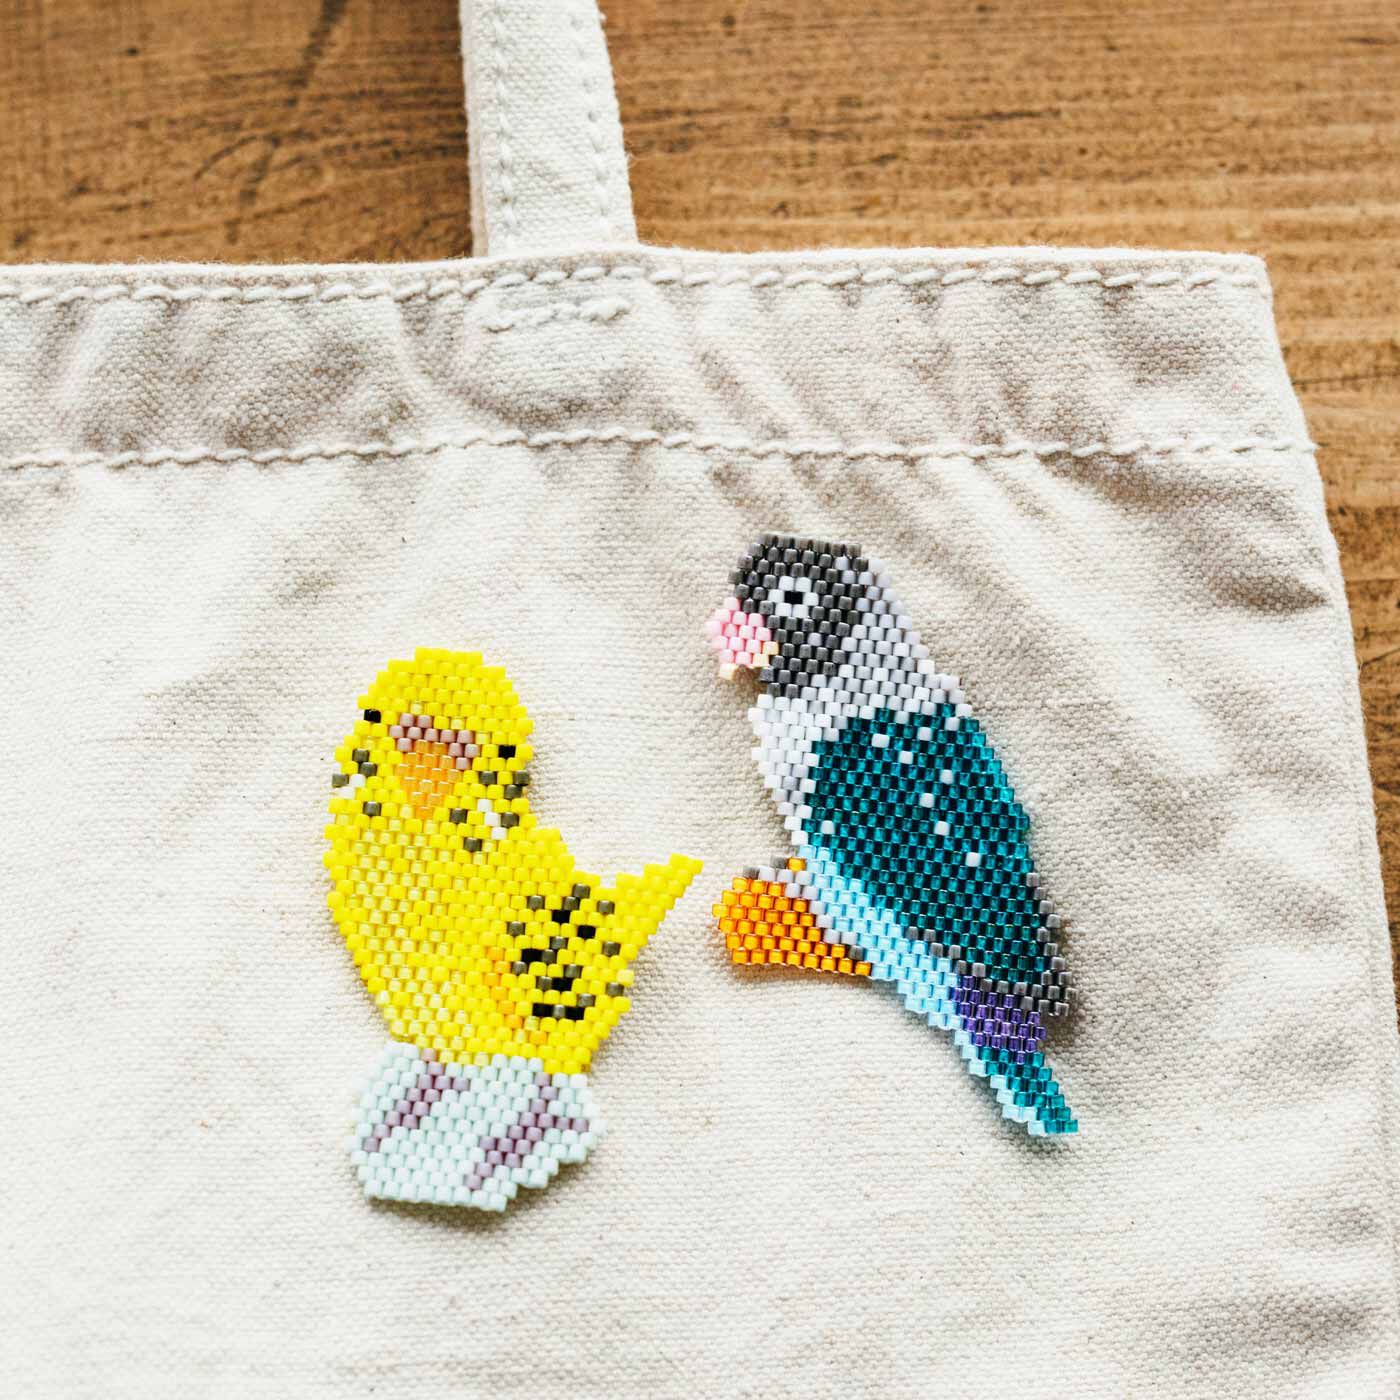 クチュリエ|クチュリエ×小鳥部 たたずまいに癒やされる ビーズステッチの小鳥の会|バッグに付けて一緒にお出かけ。